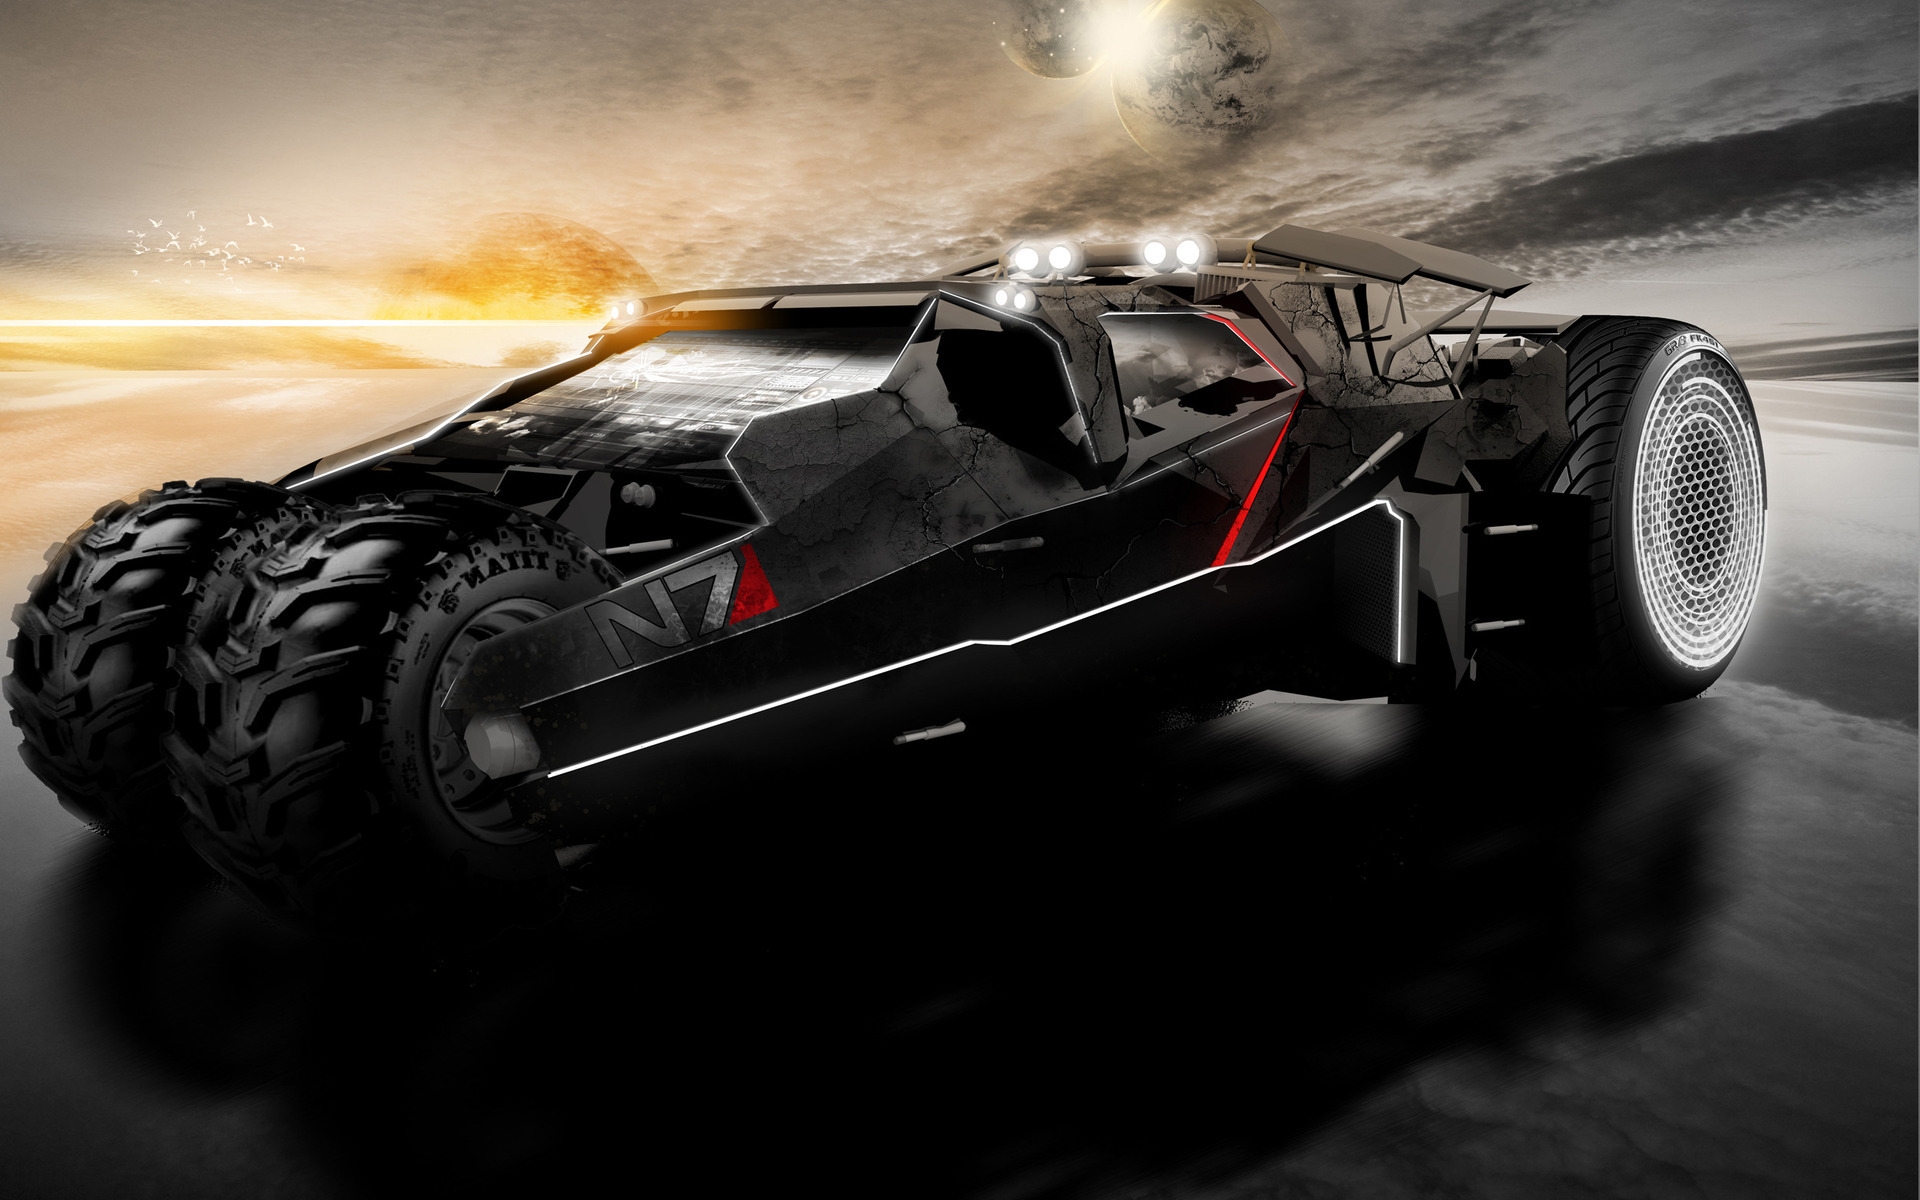 Mass Effect 2 Car for 1920 x 1200 widescreen resolution